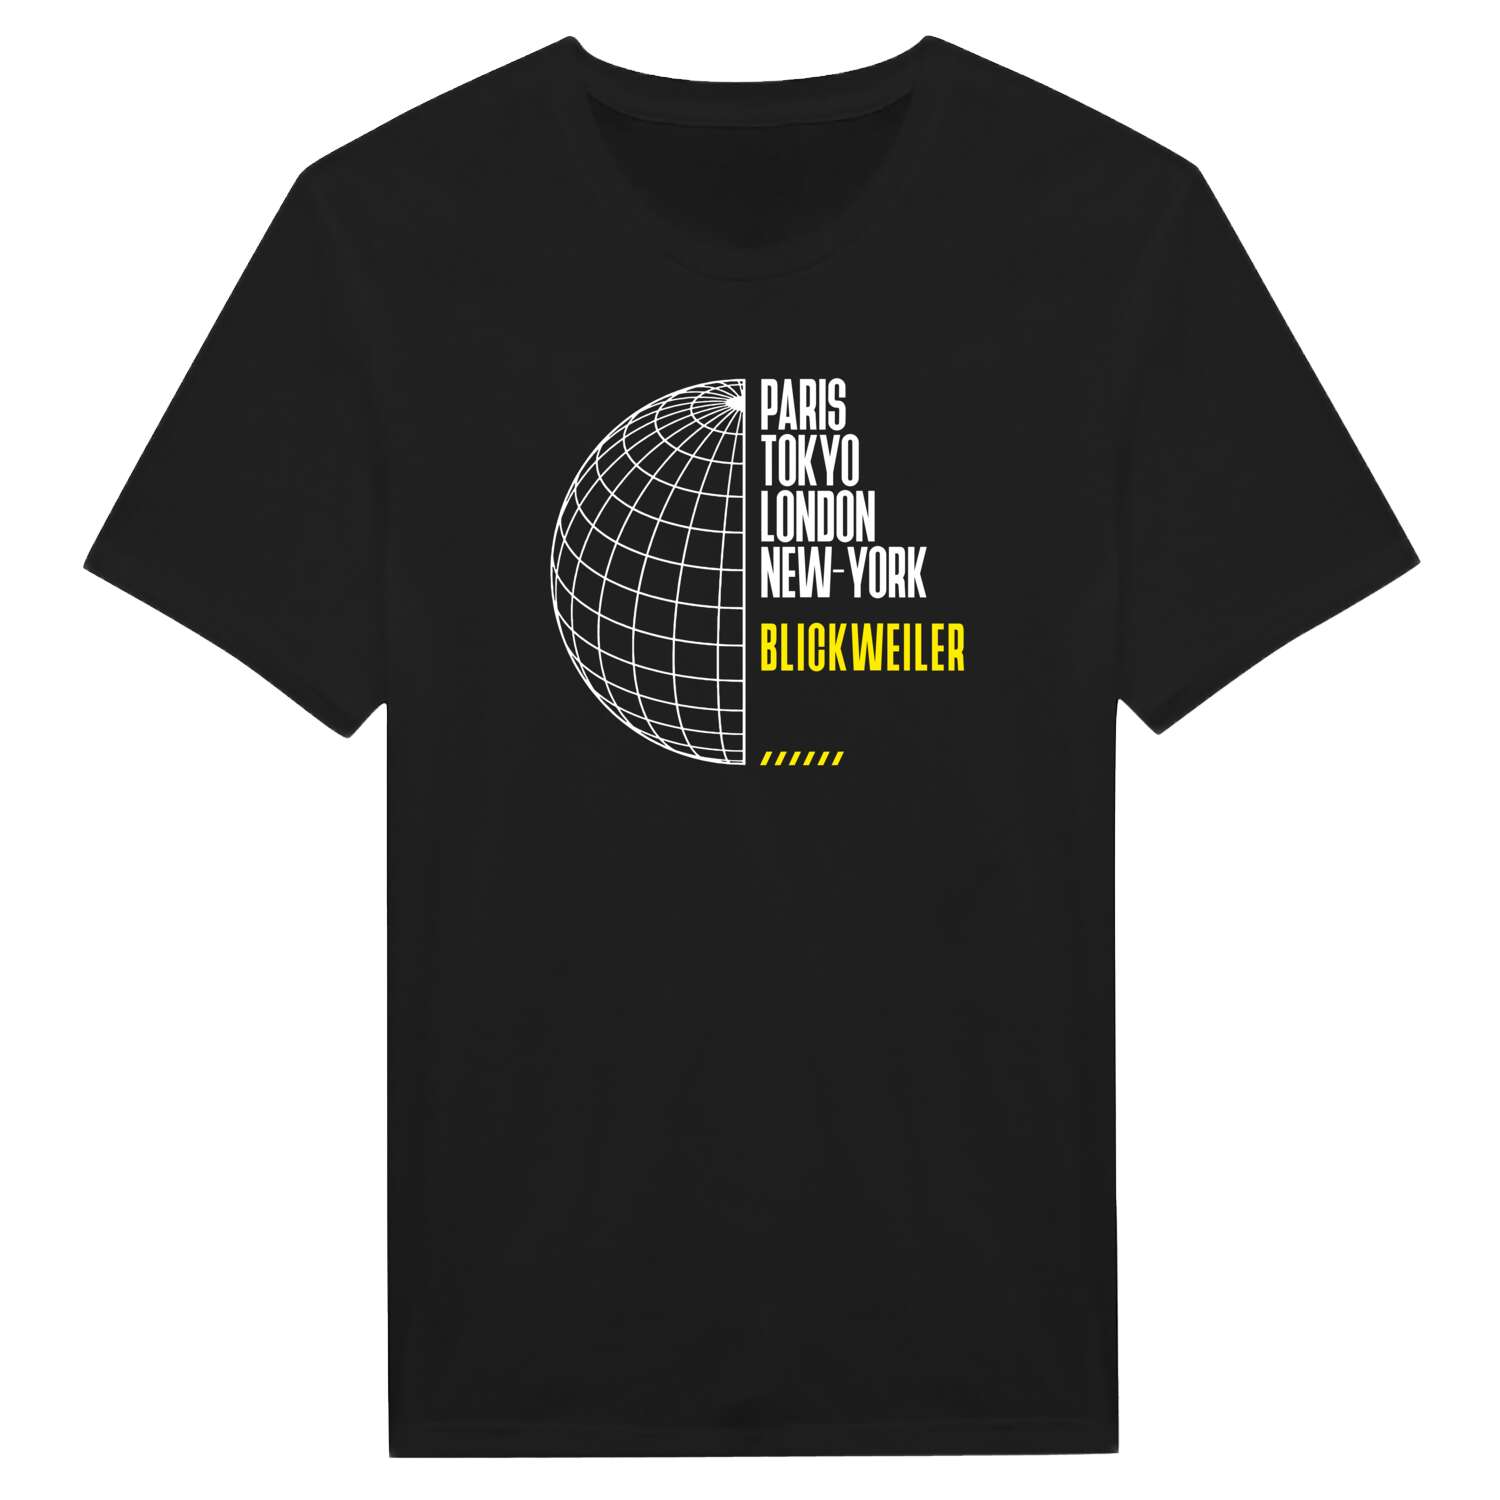 Blickweiler T-Shirt »Paris Tokyo London«